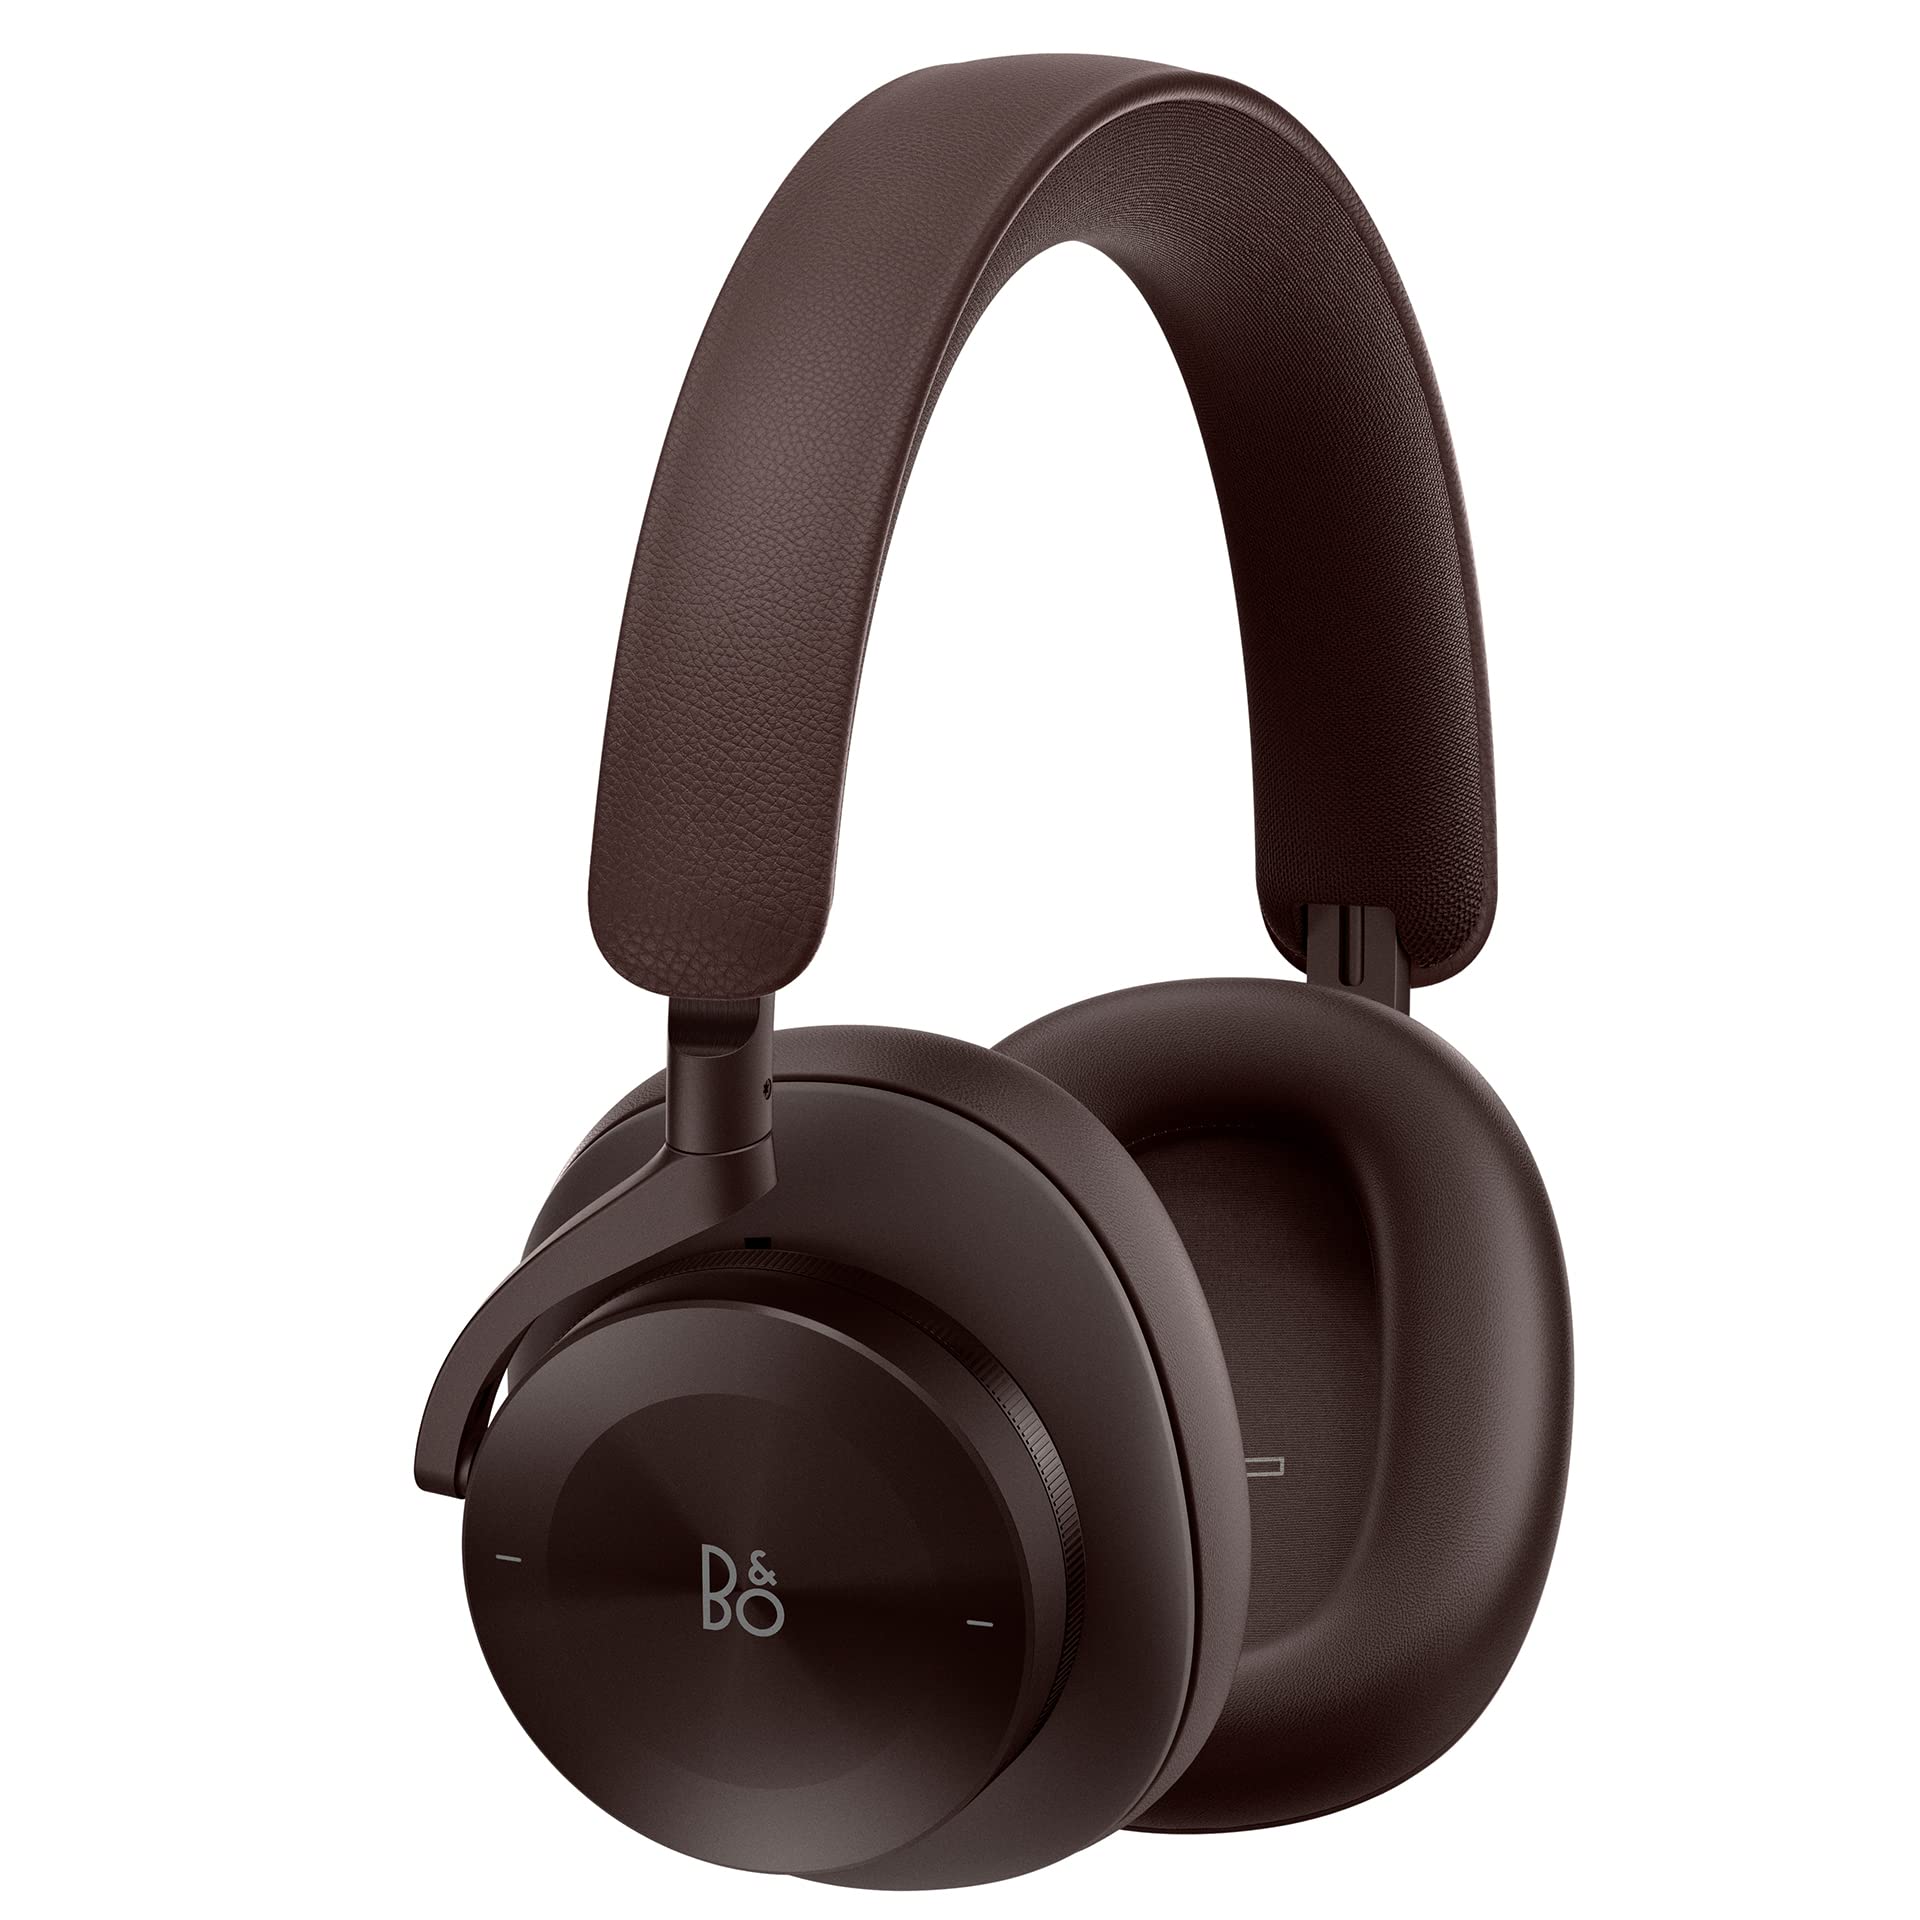 Bang & Olufsen Beoplay H95 优质舒适无线主动降噪 (ANC) 耳罩式耳机，电池续航时间为 38 小时，配有保护性便携包，栗色